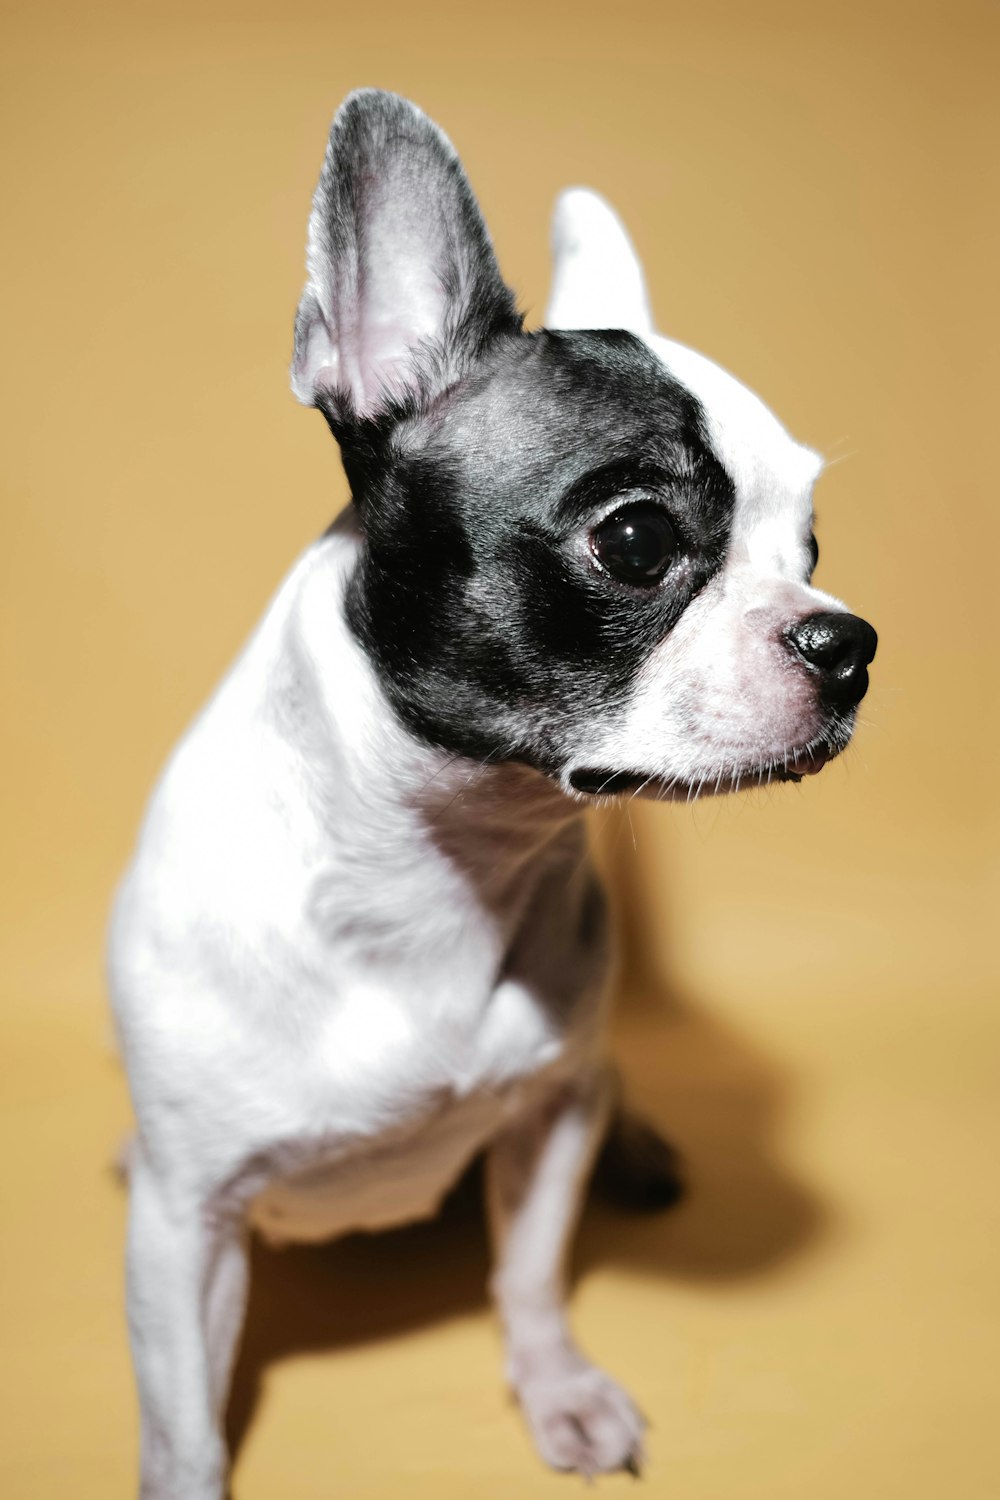 Black and white short coated small dog photo – Free Dog Image on Unsplash